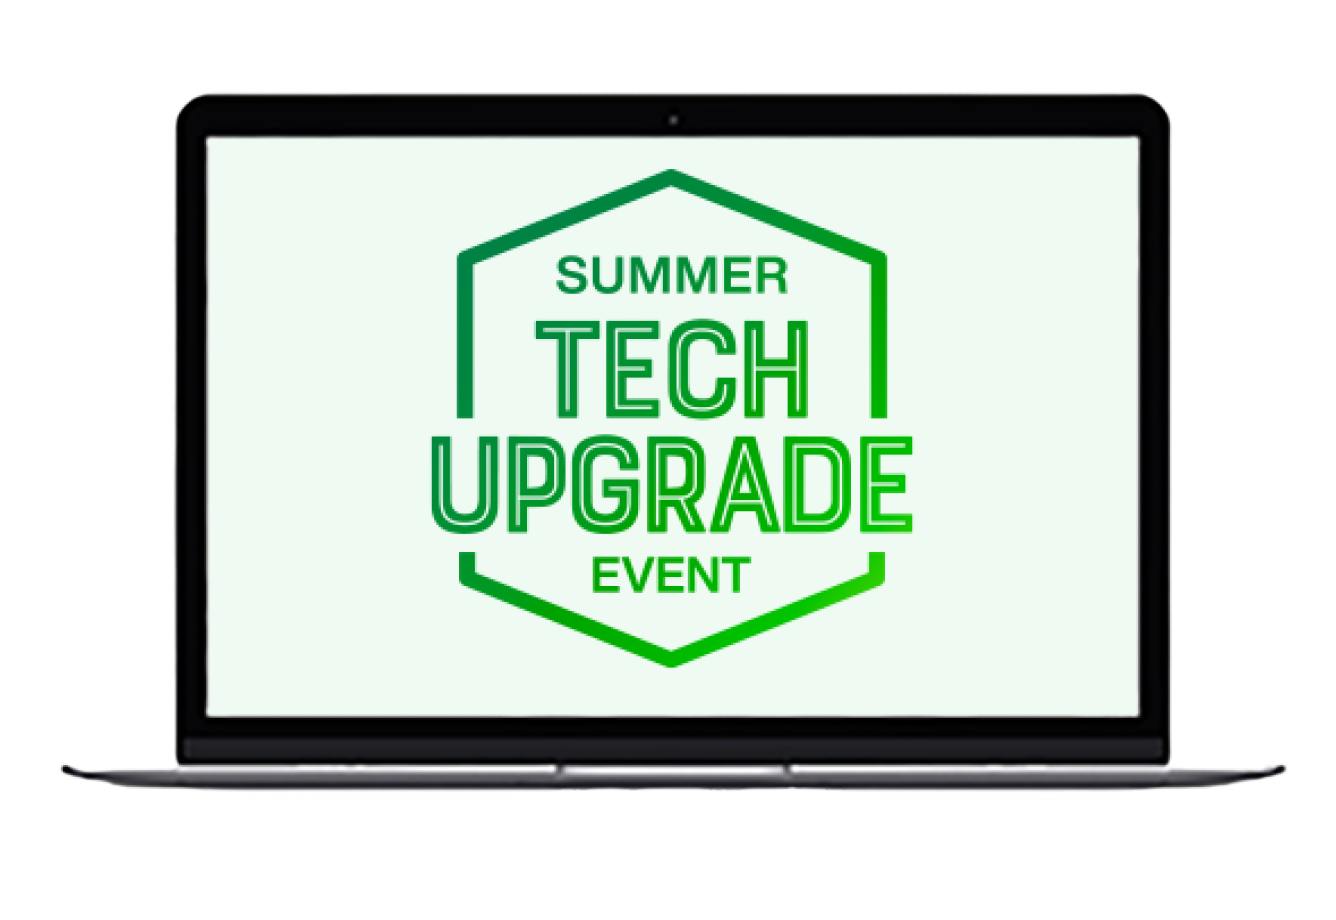 Laptop screen showing Summer Tech Upgrade Event